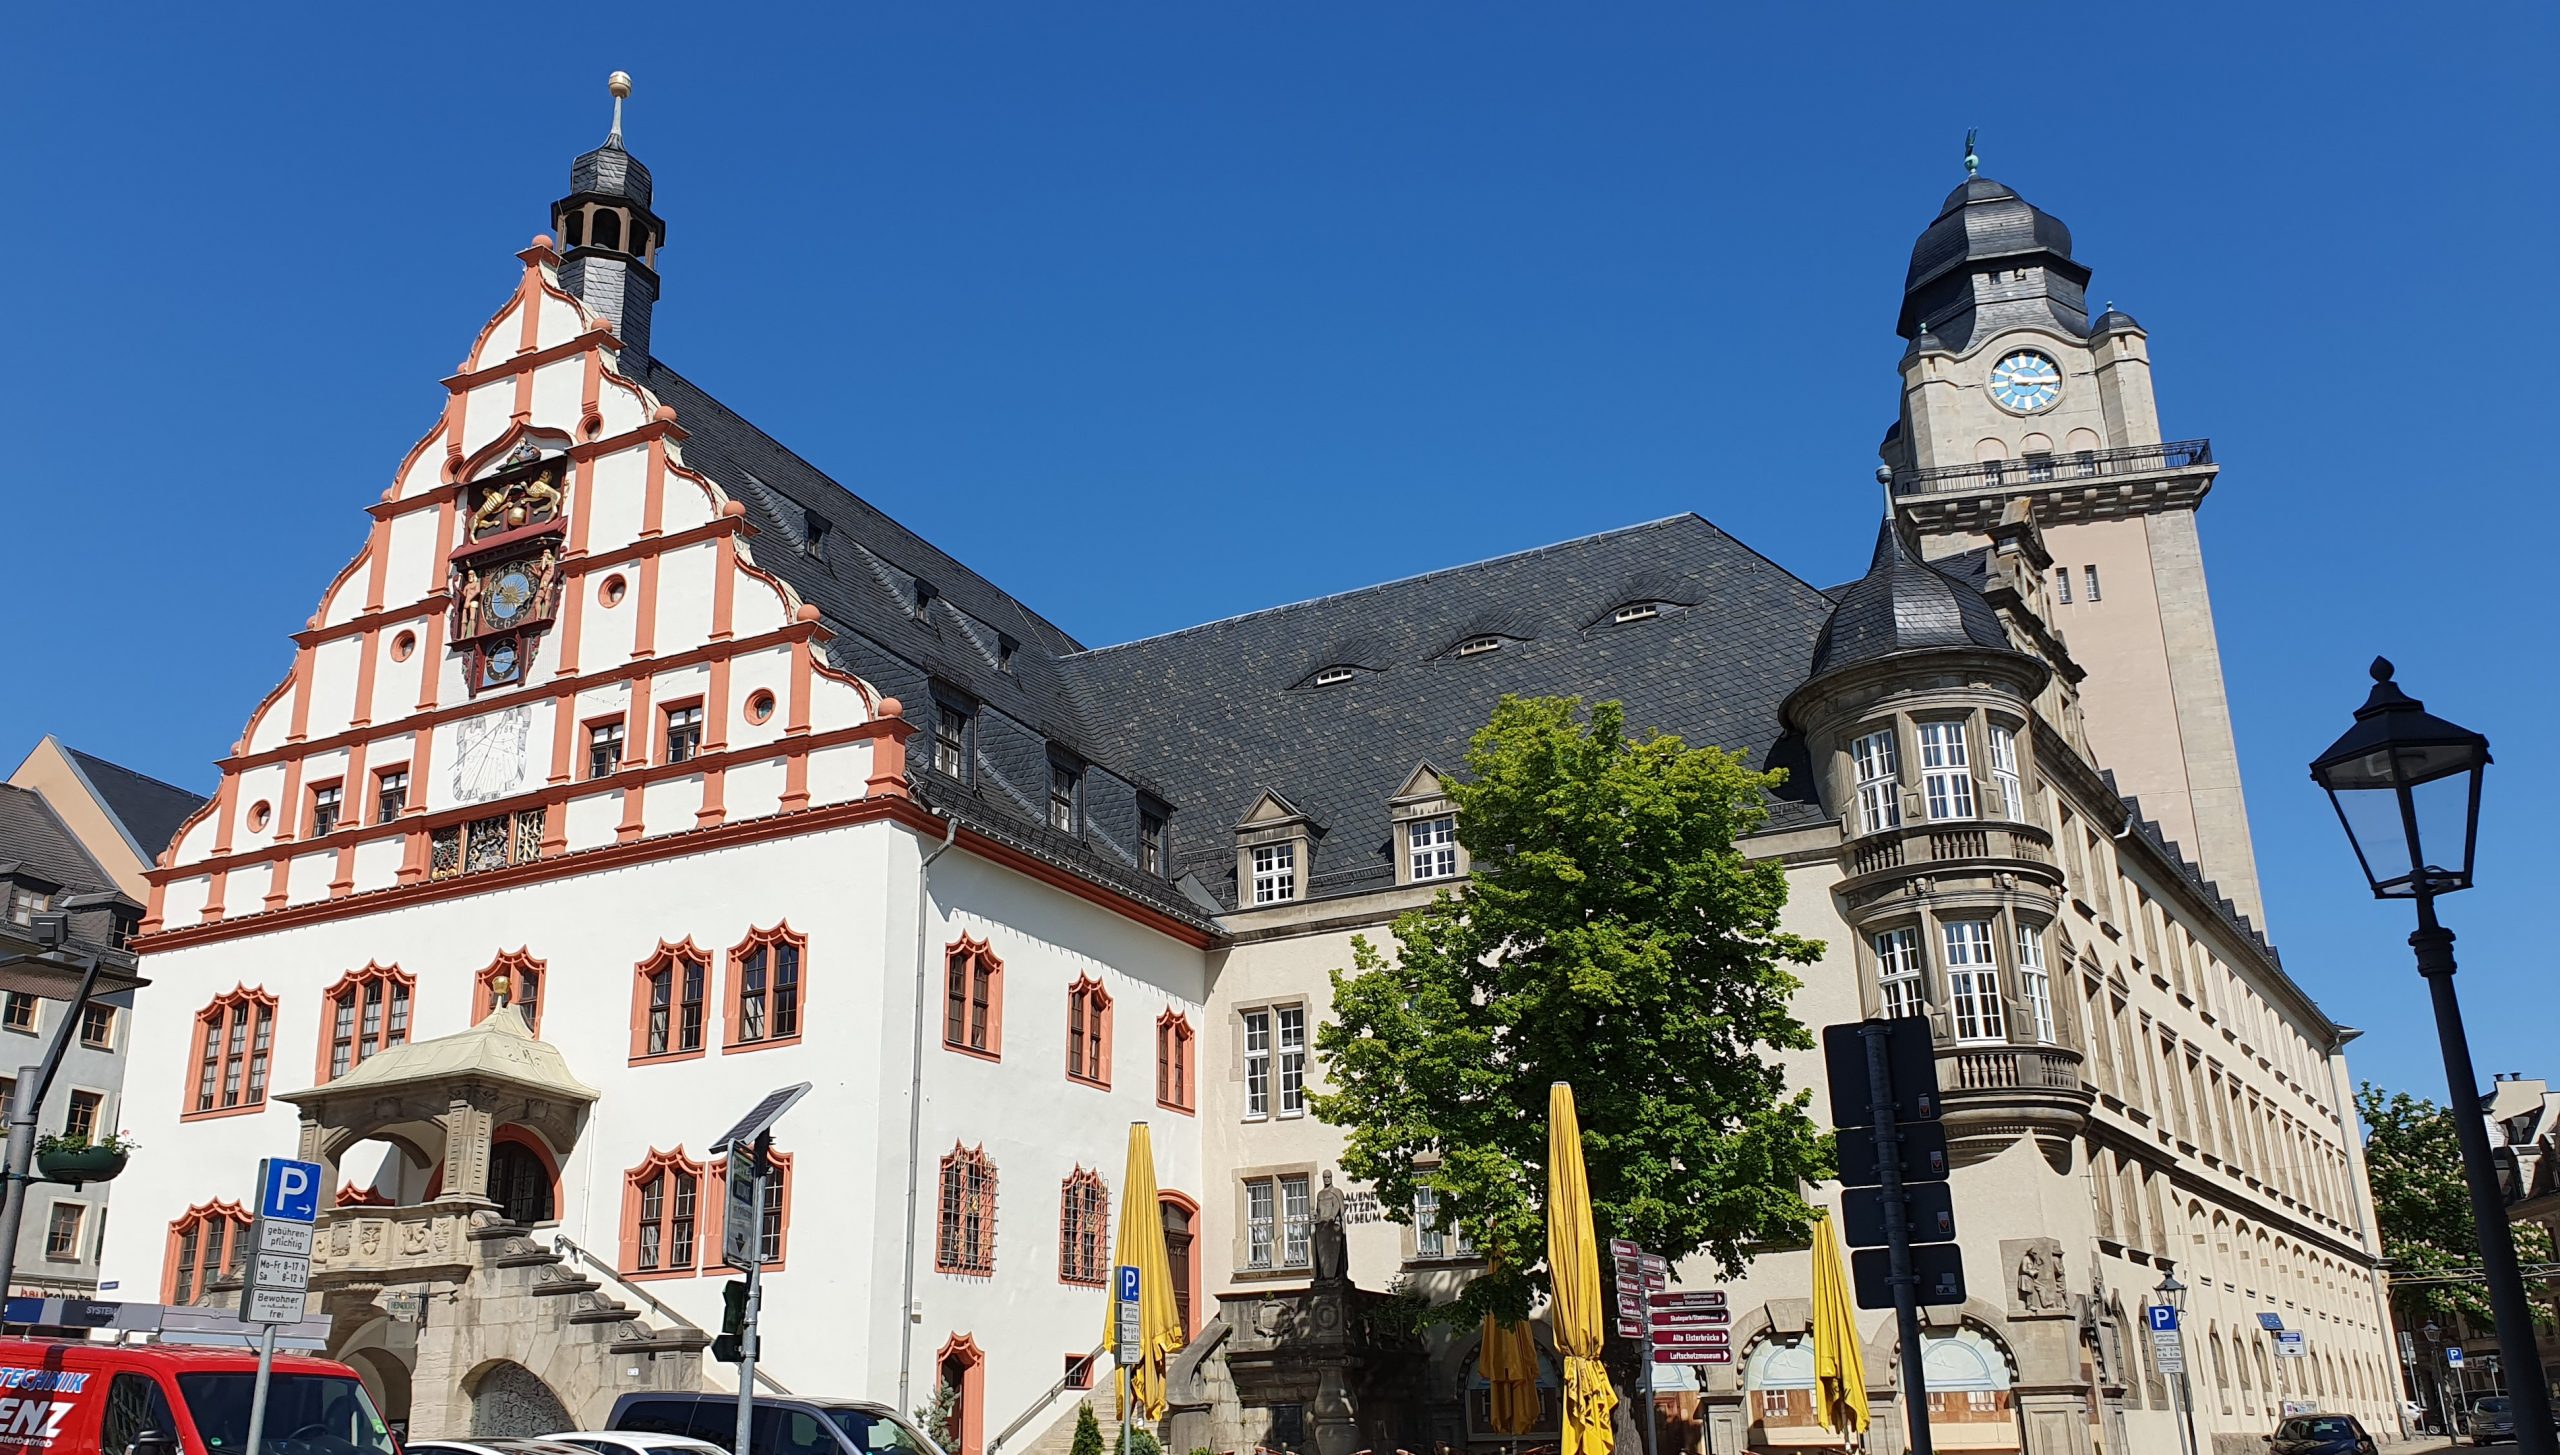  Renaissancegiebel Altes Rathaus zu Plauen